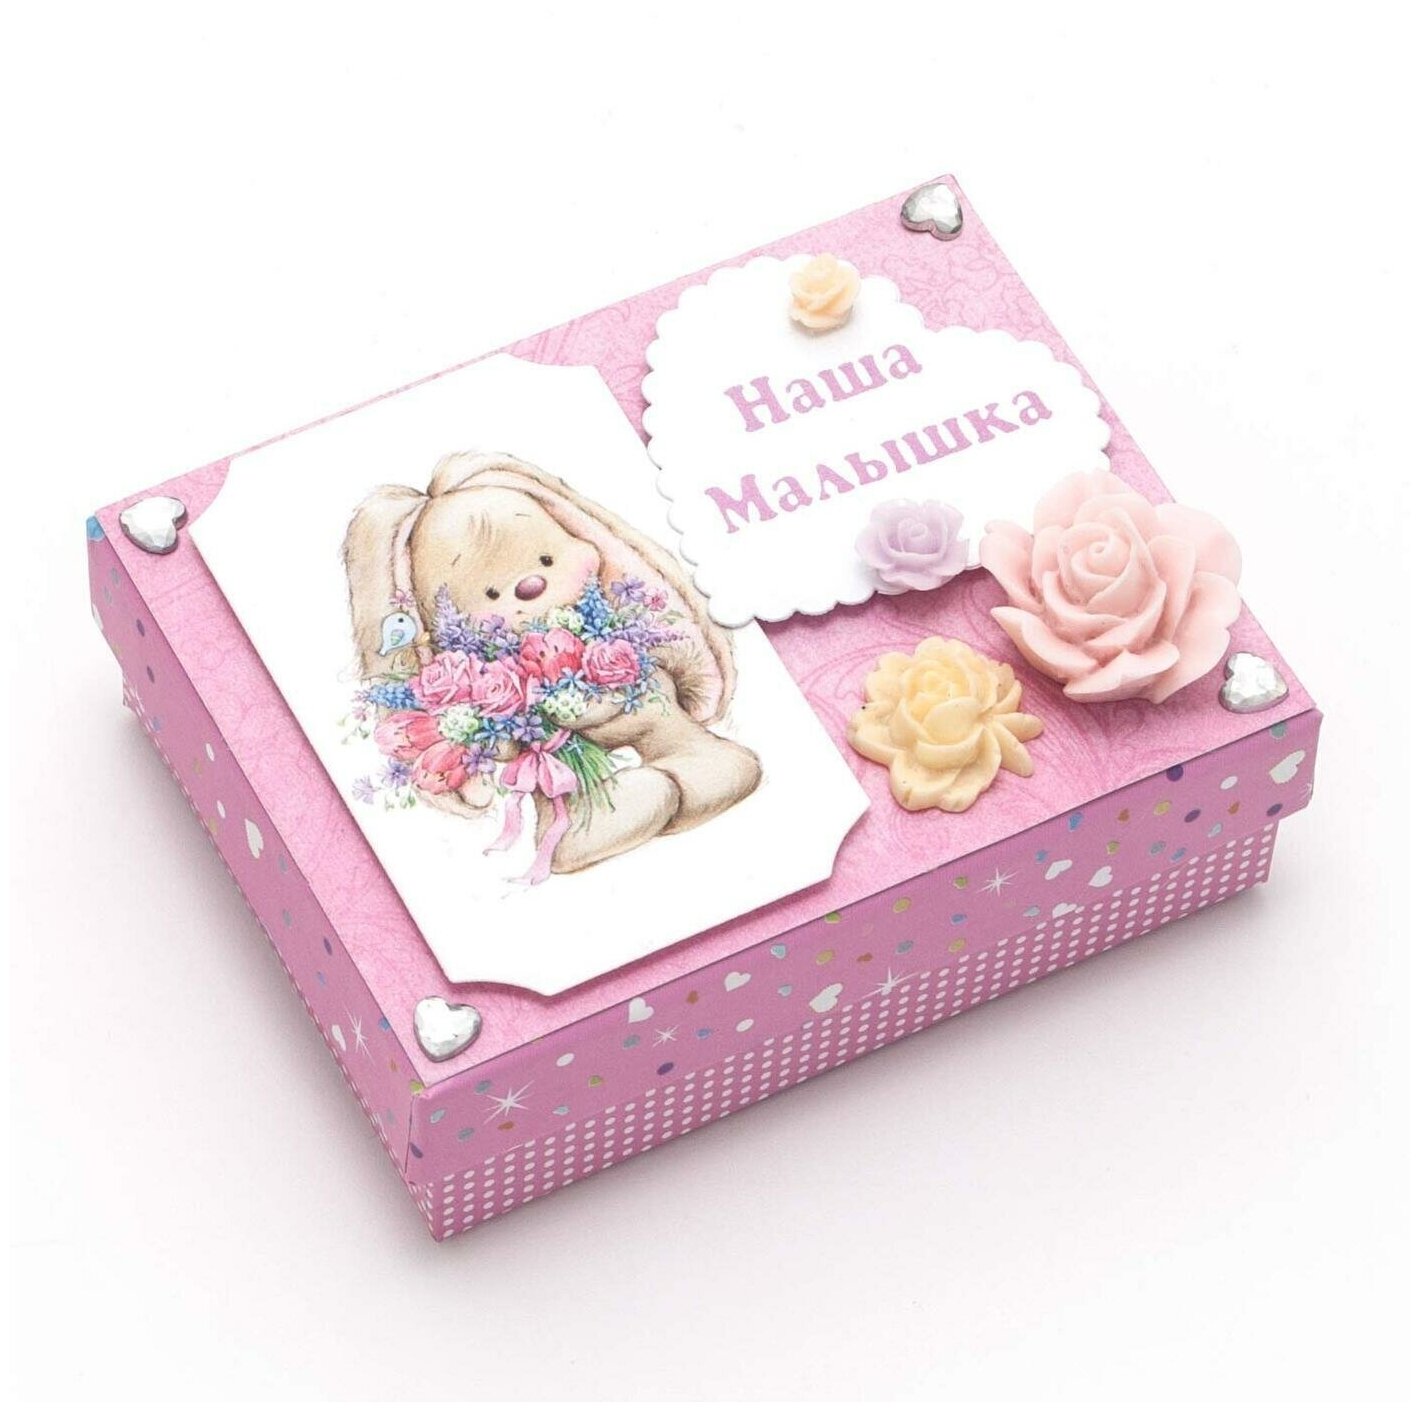 Коробочка для бирки из роддома новорожденной девочки "Заинька с букетом" розового цвета, с латексными розами и рисунком на крышке, с атласными лентами для фиксации